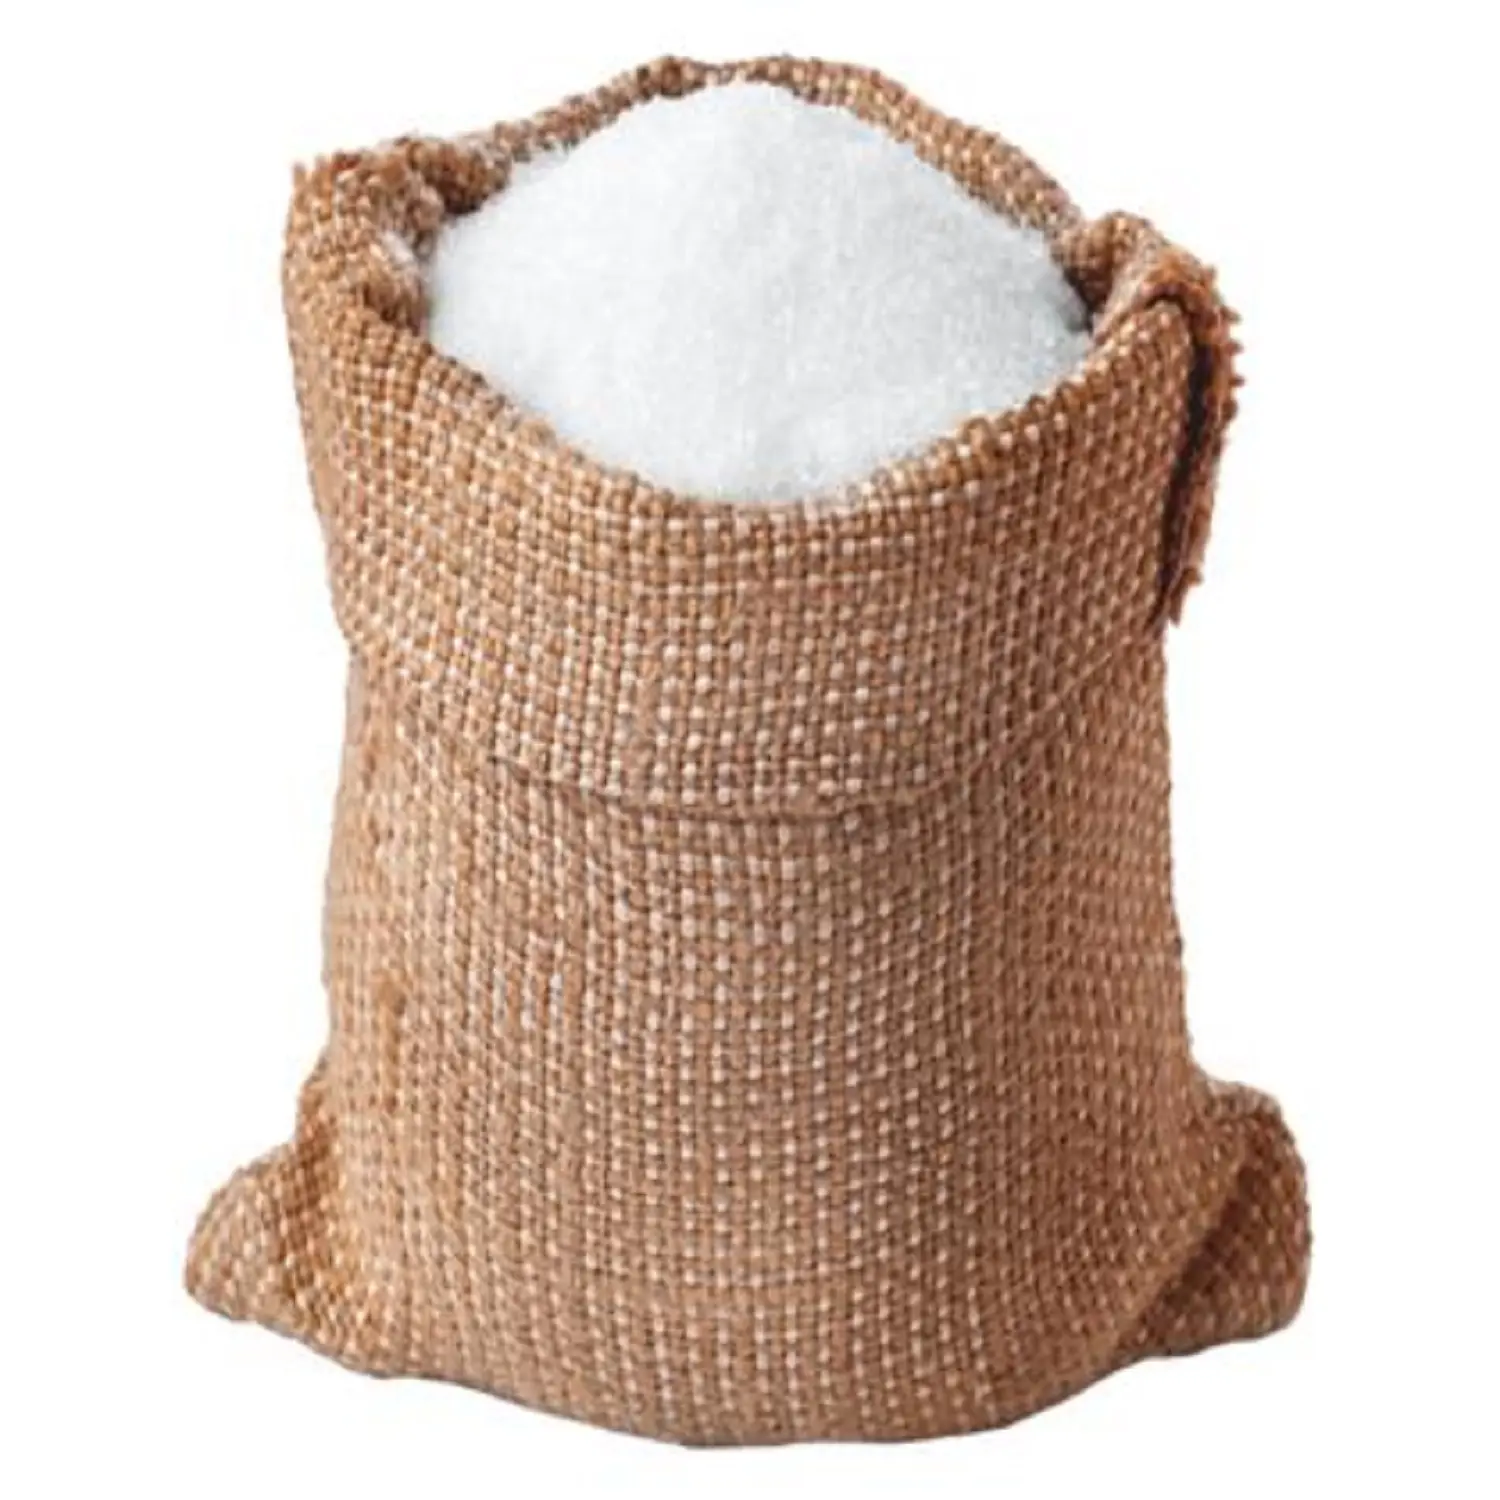 Raffinierte Icumsa 45 Zucker 50kg Verpackung-Brasilia nischer Weiß zucker Icumsa 45 Zucker Großhandel